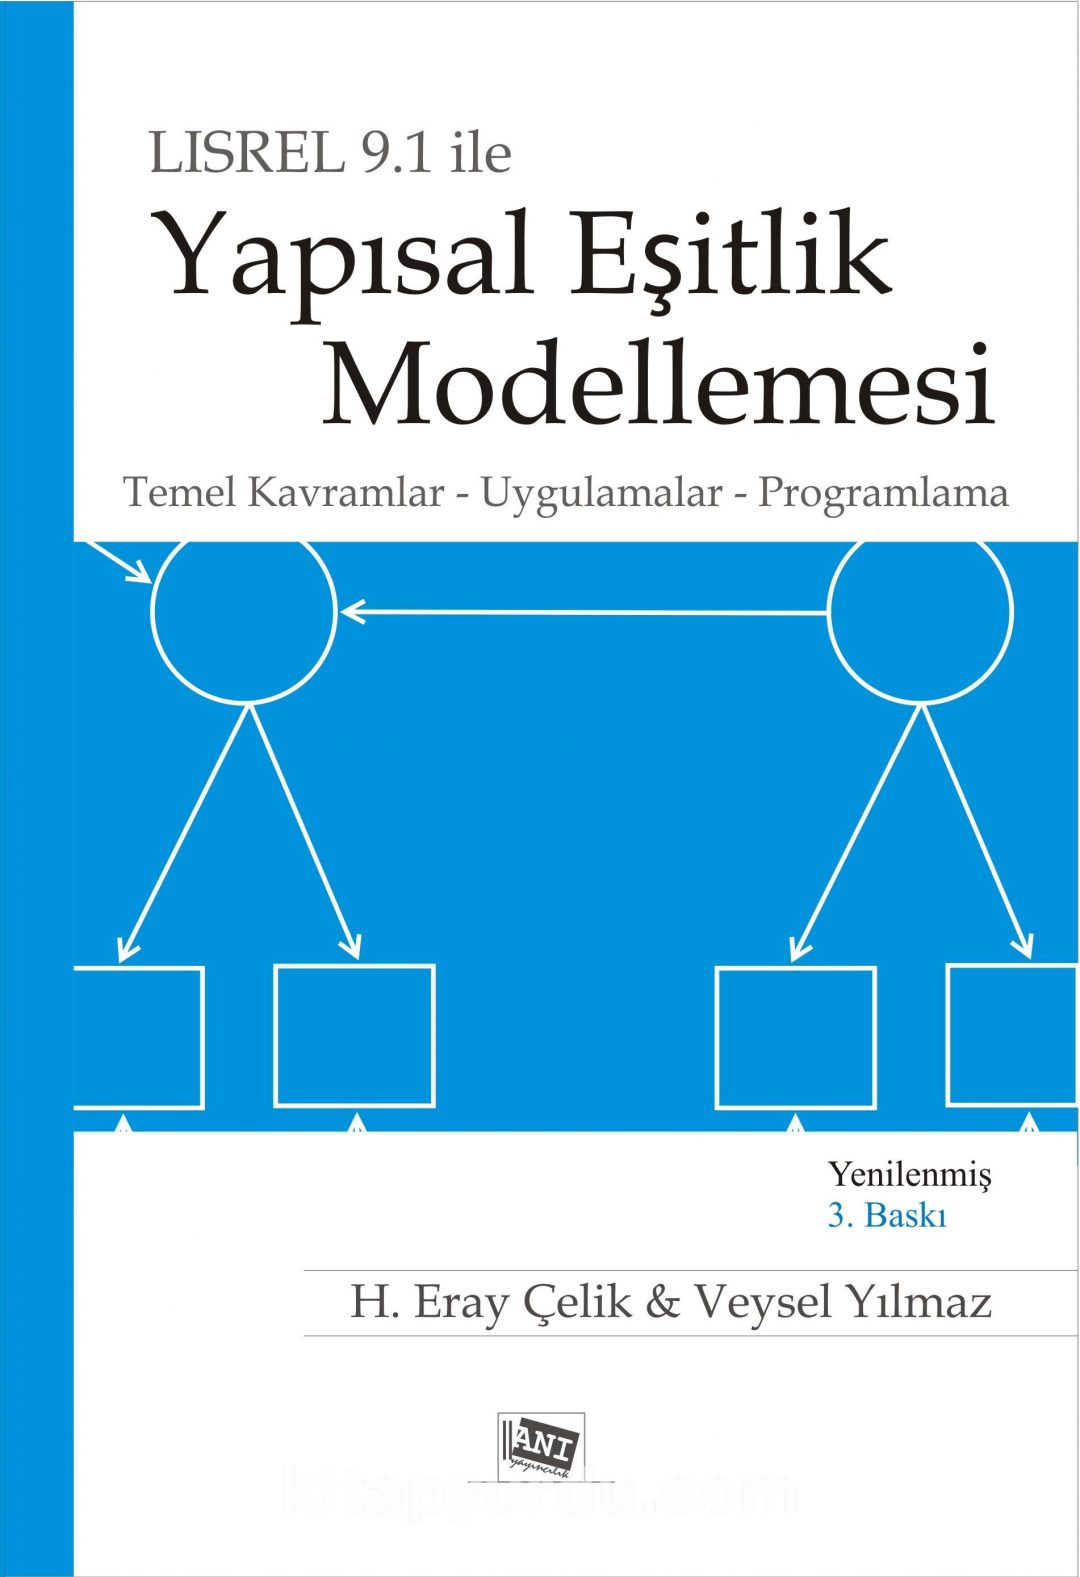 Lisrel 9.1 ile Yapısal Eşitlik Modellemesi & Temel Kavramlar, Uygulamalar, Programlama